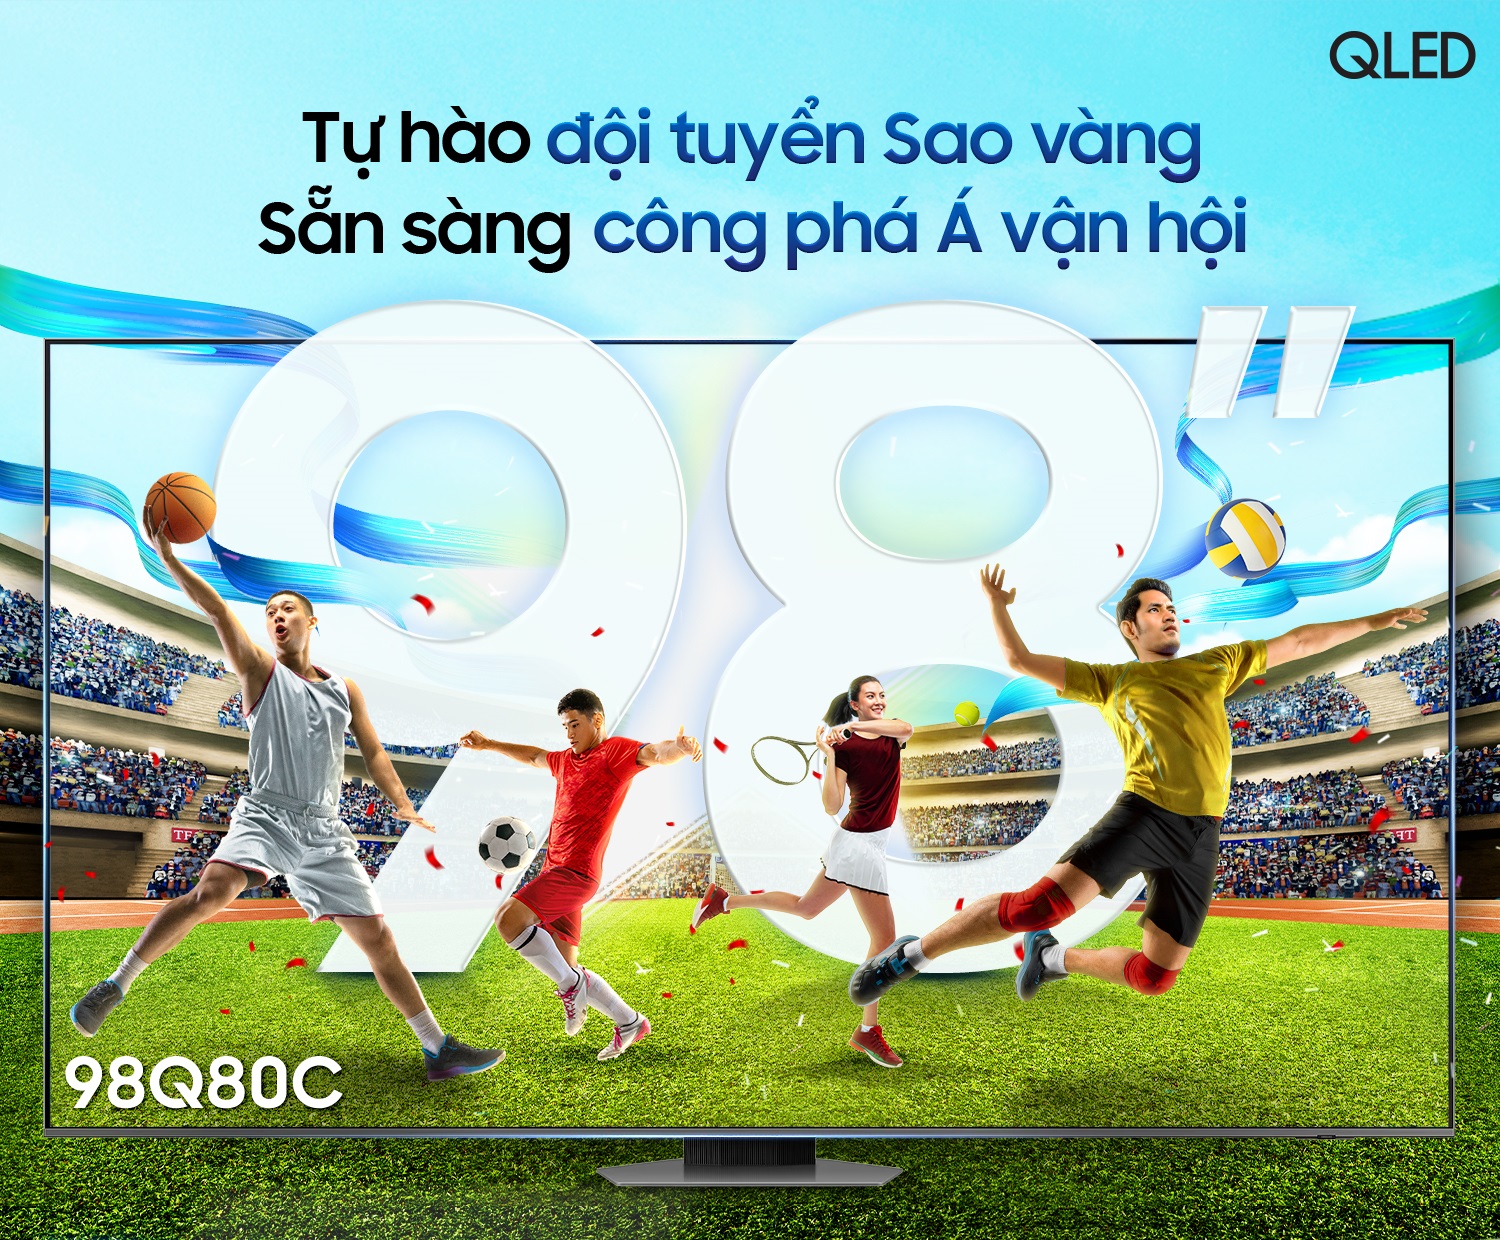 Cách TV Samsung nâng tầm trải nghiệm xem thể thao cho người hâm mộ Việt - Ảnh 1.